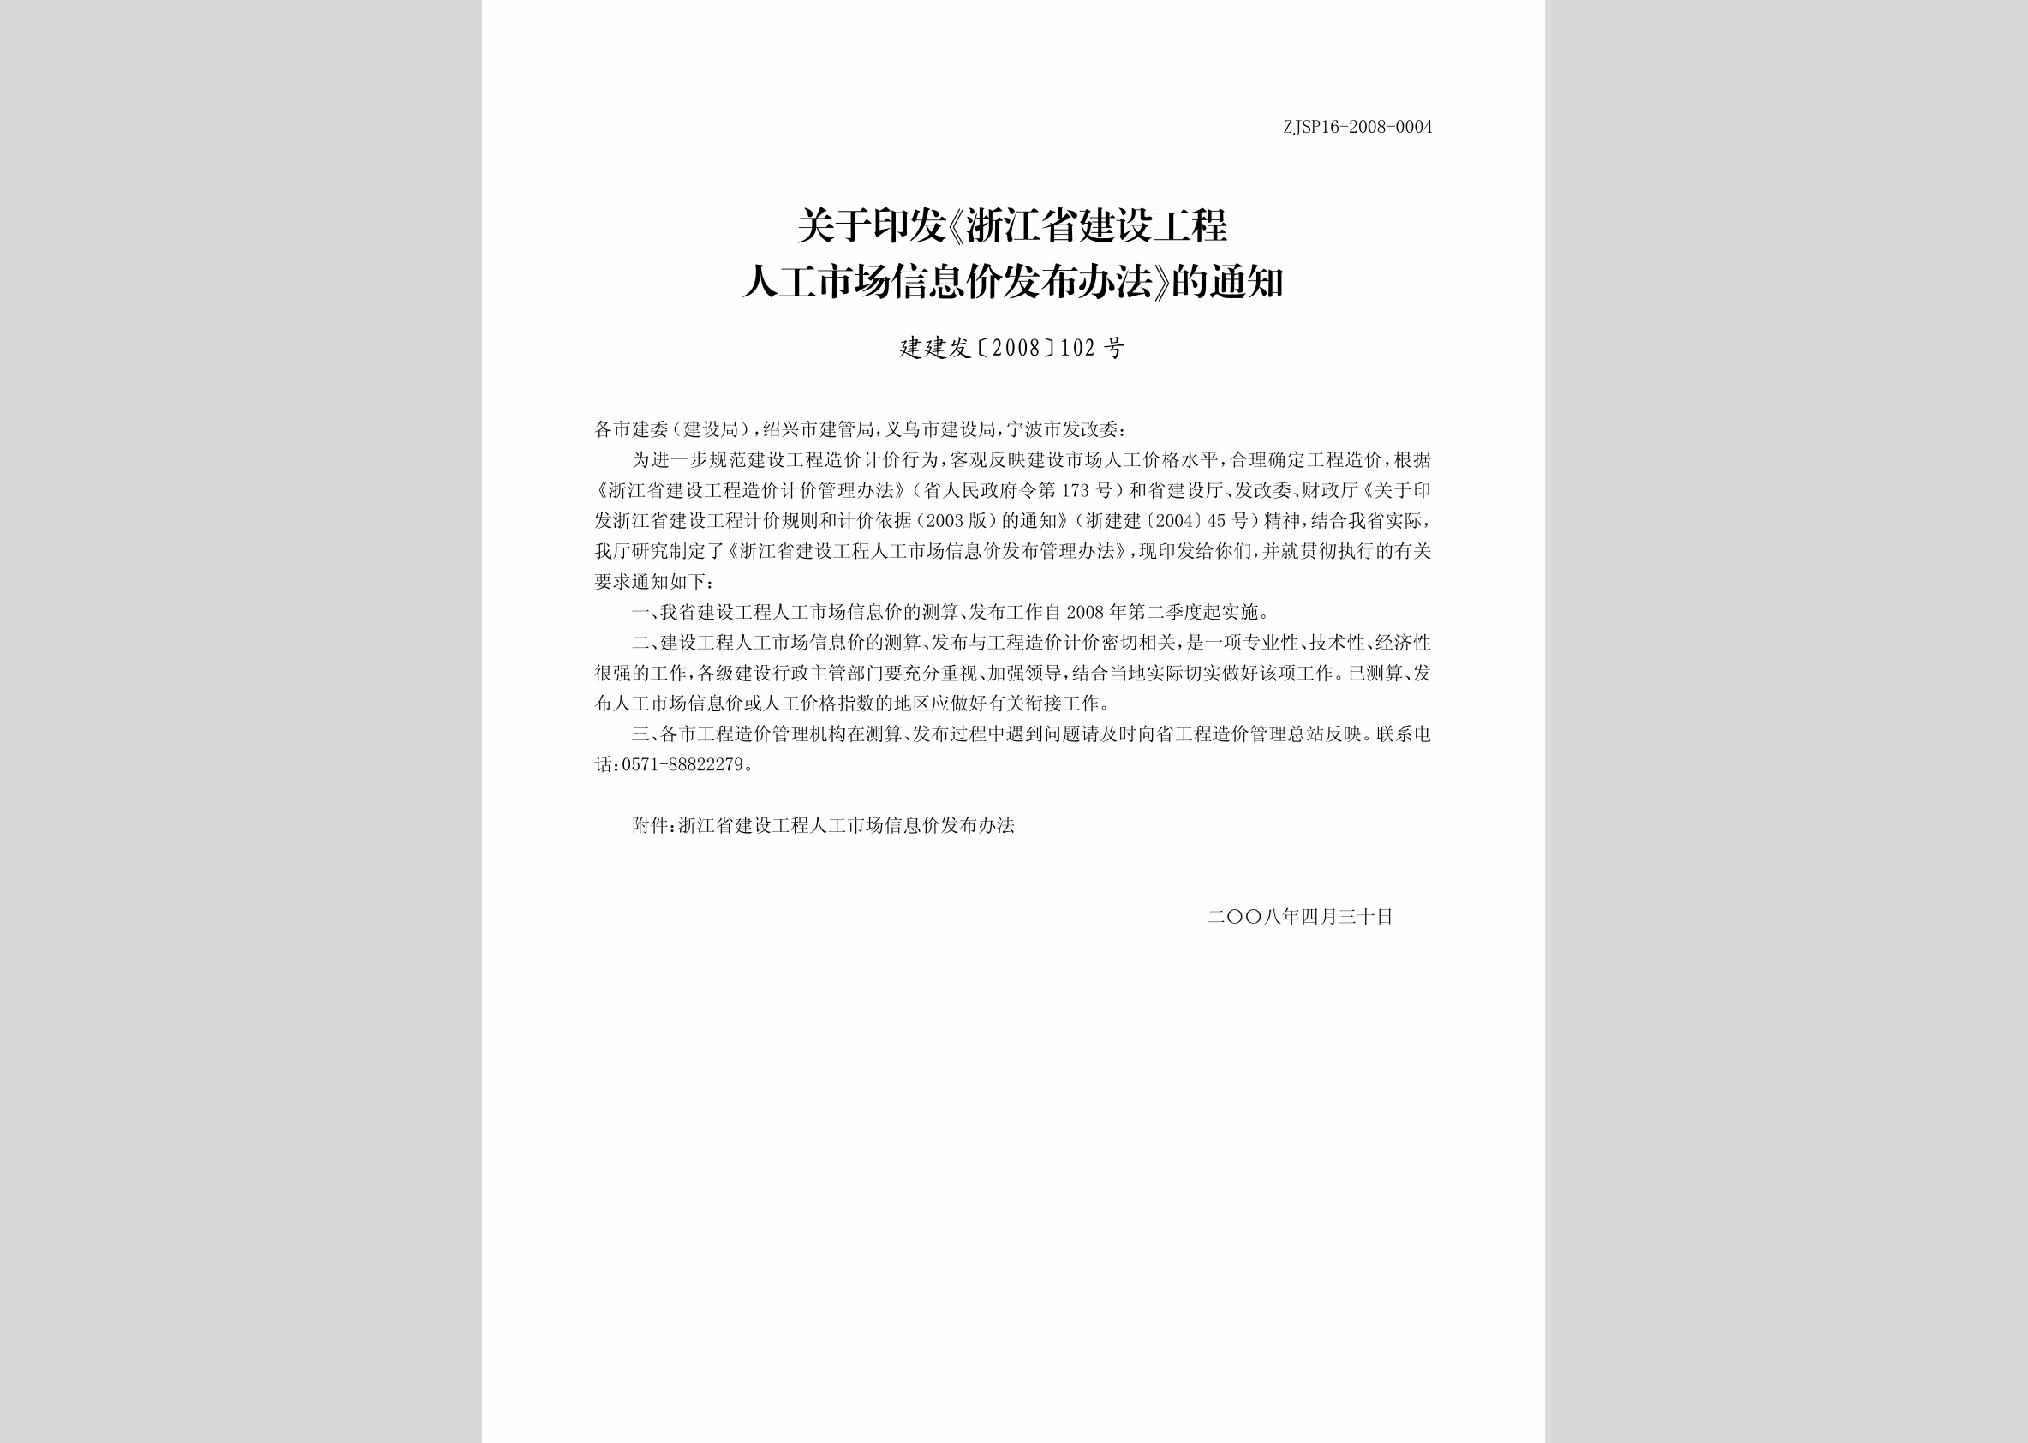 建建发[2008]102号：关于印发《浙江省建设工程人工市场信息价发布办法》的通知